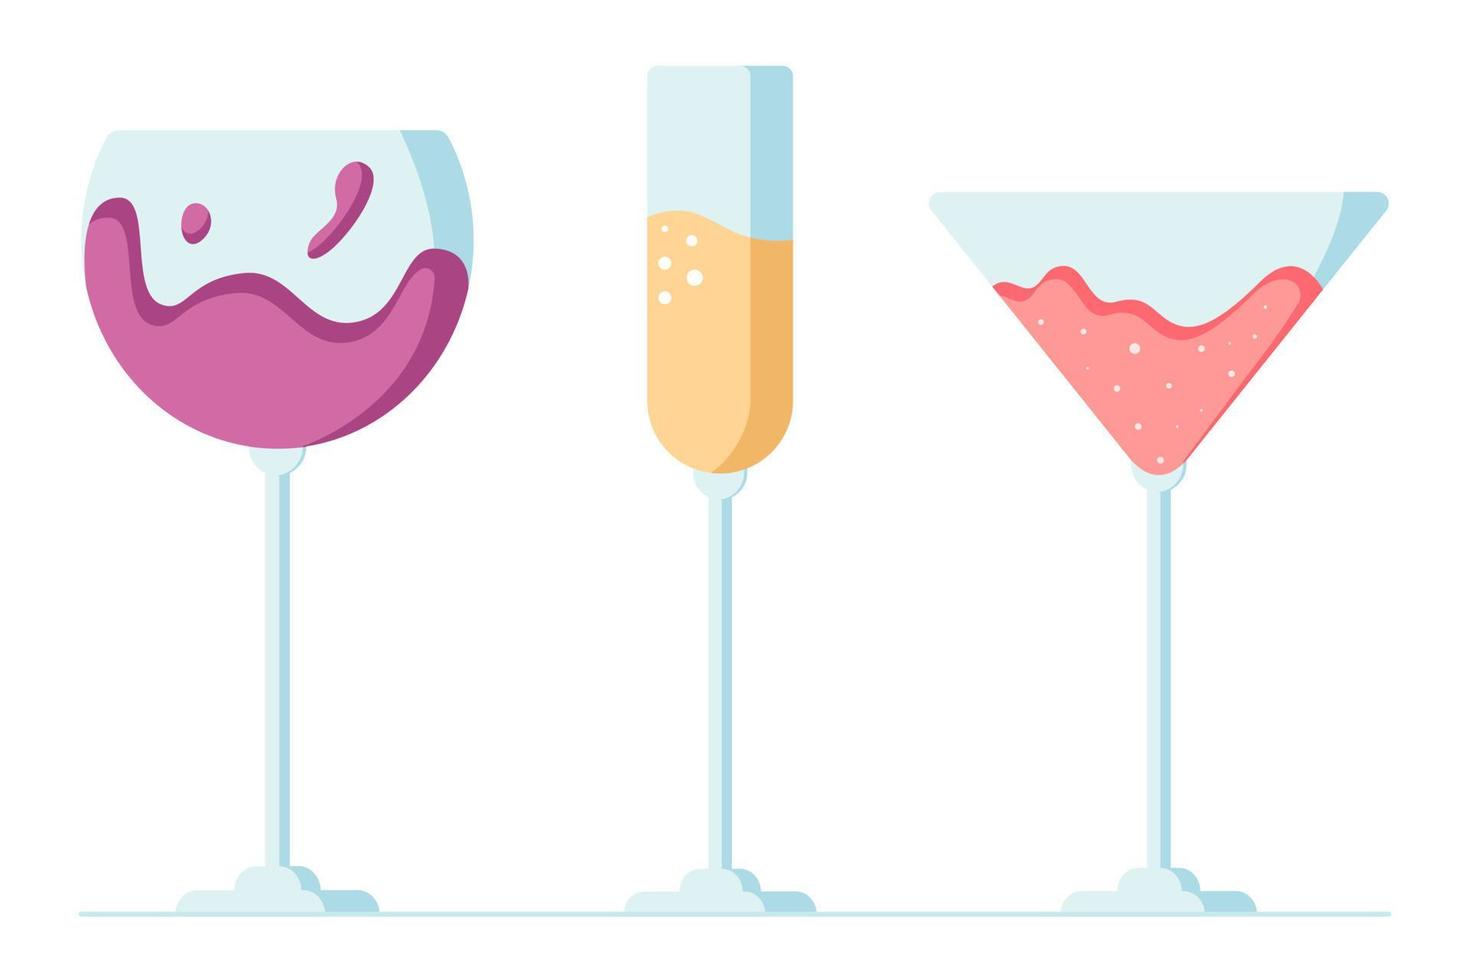 serti de cocktails en verre, de vin, de champagne et de vermouth, célébrez, applaudissez et buvez des cocktails alcoolisés. illustration vectorielle de dessin animé dans un style plat. vecteur